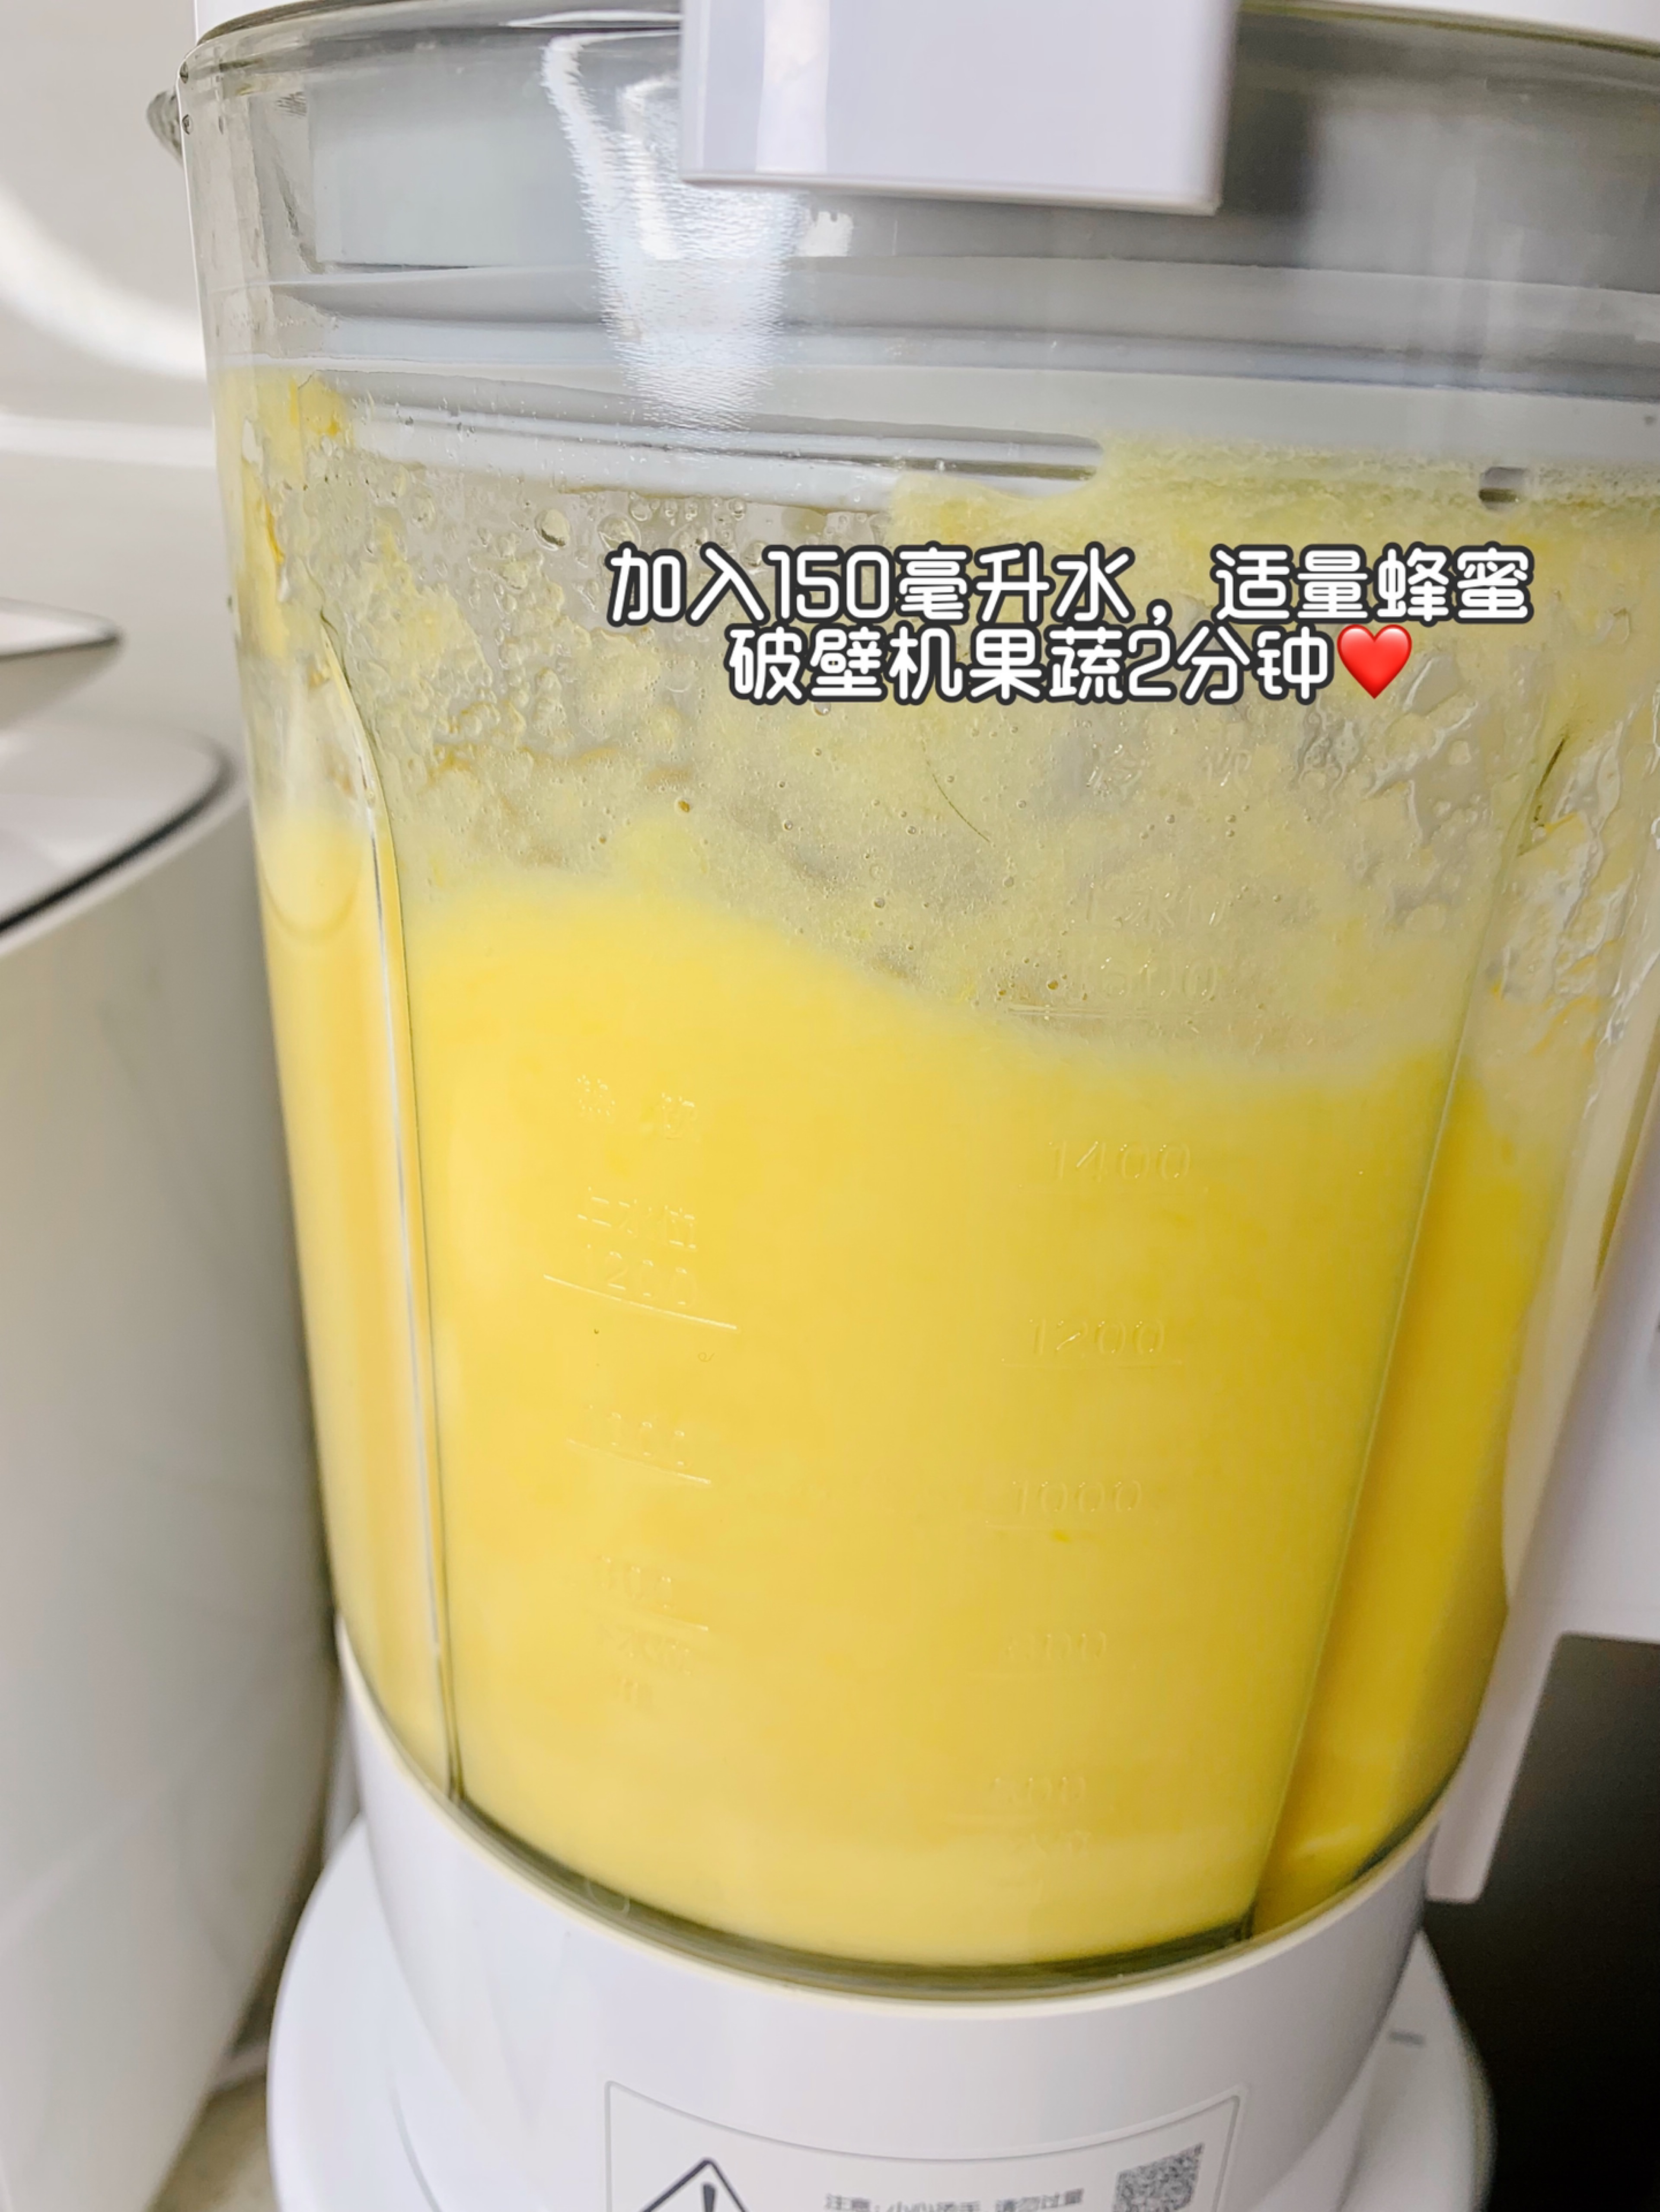 雪梨橙汁,雪梨橙汁的家常做法 - 美食杰雪梨橙汁做法大全